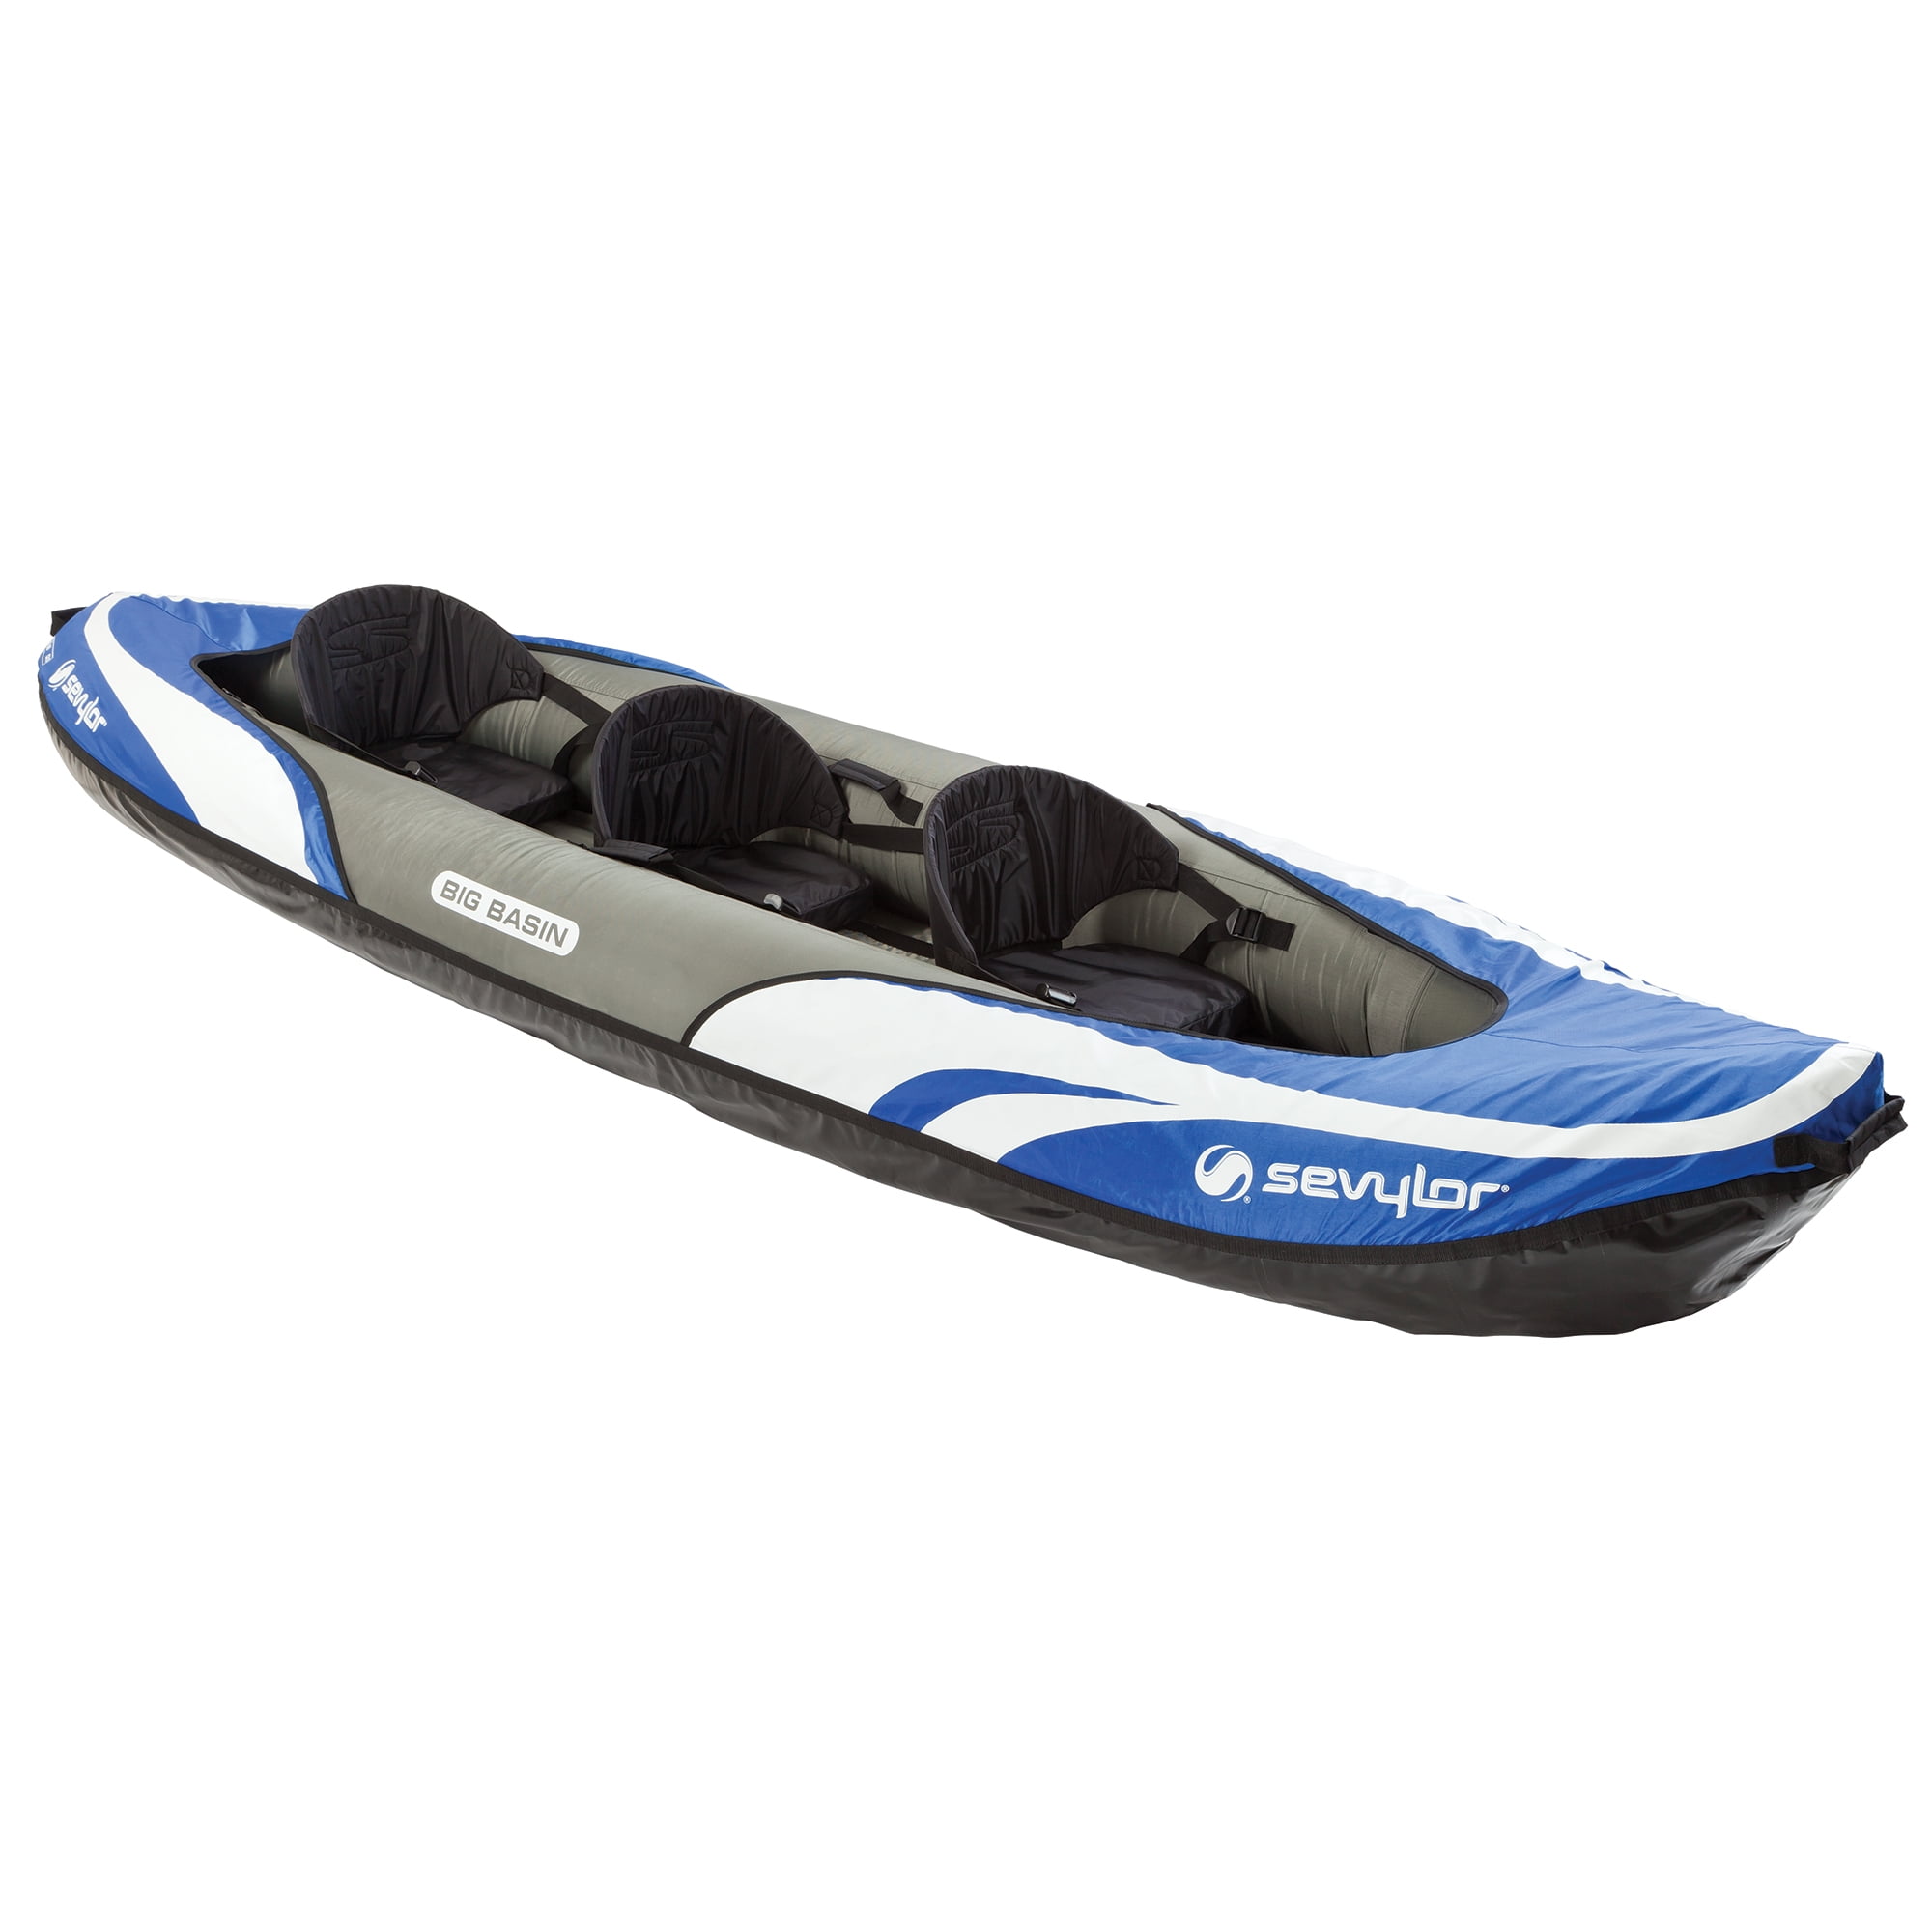 Skip the Kayak Trailer with an Inflatable Kayak